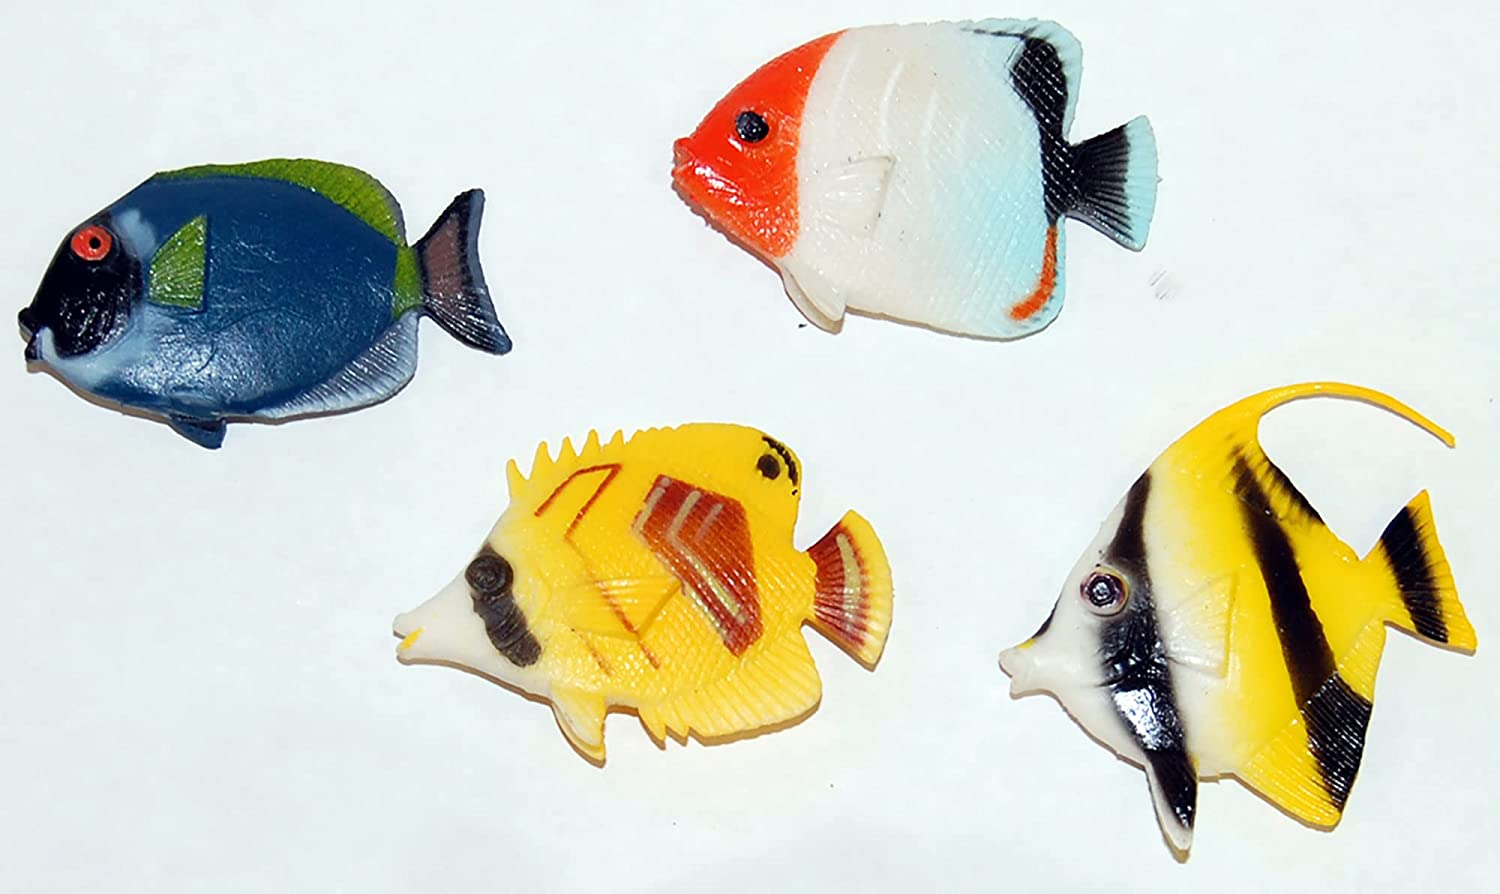 Gel Aquarium with Fish